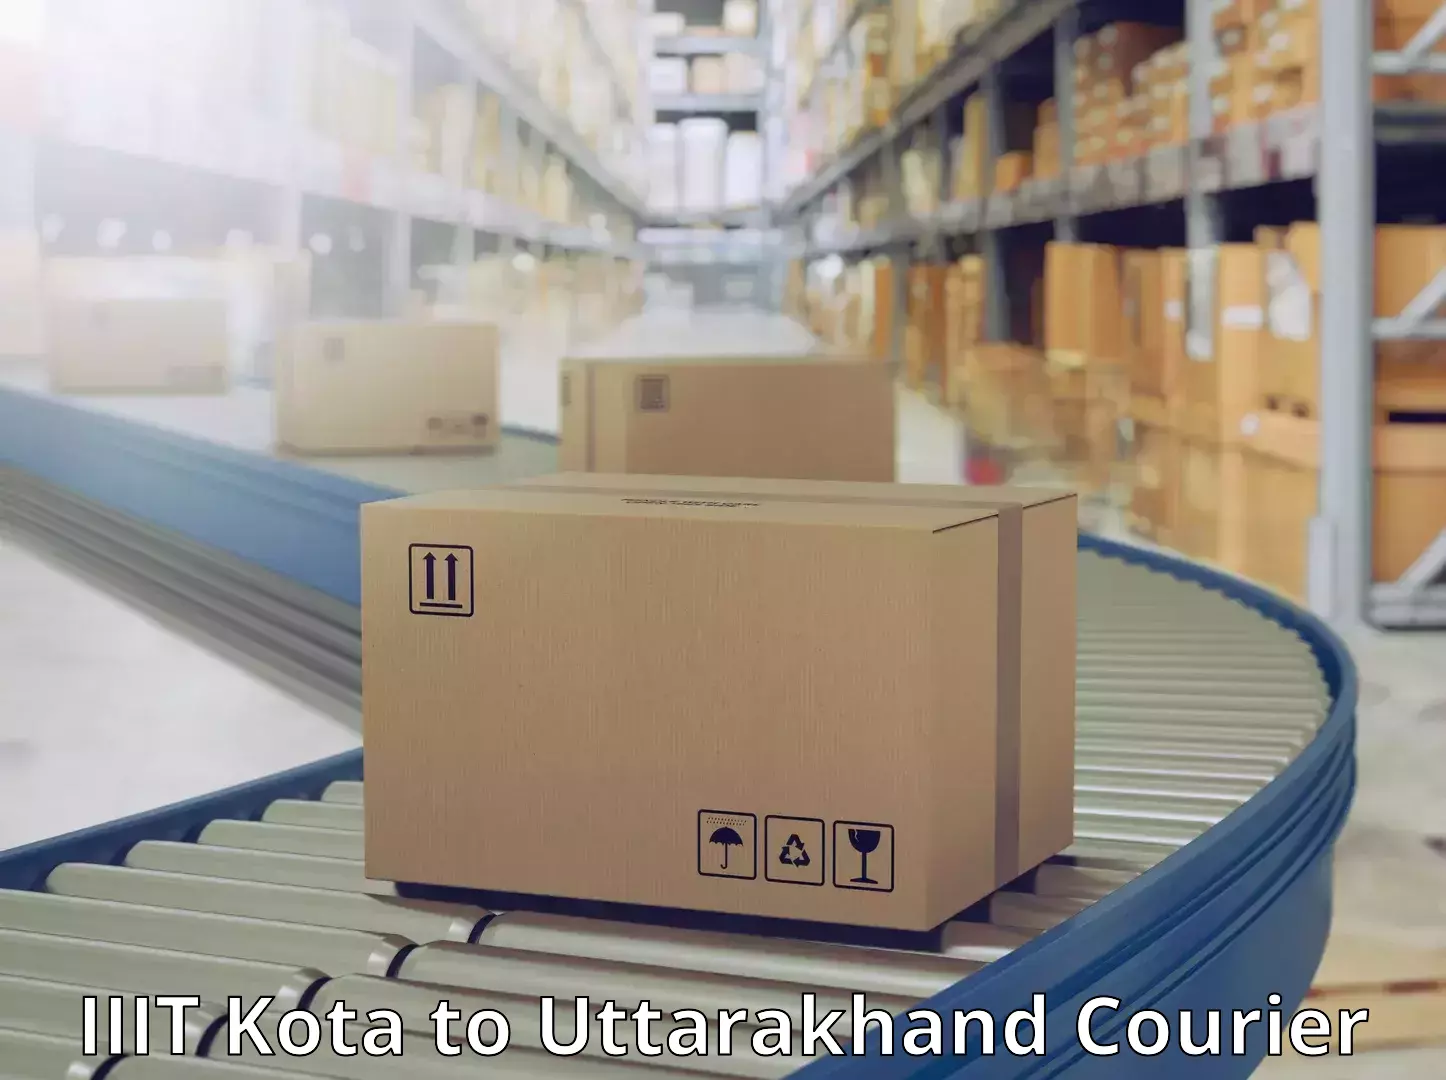 Courier service efficiency IIIT Kota to Haridwar